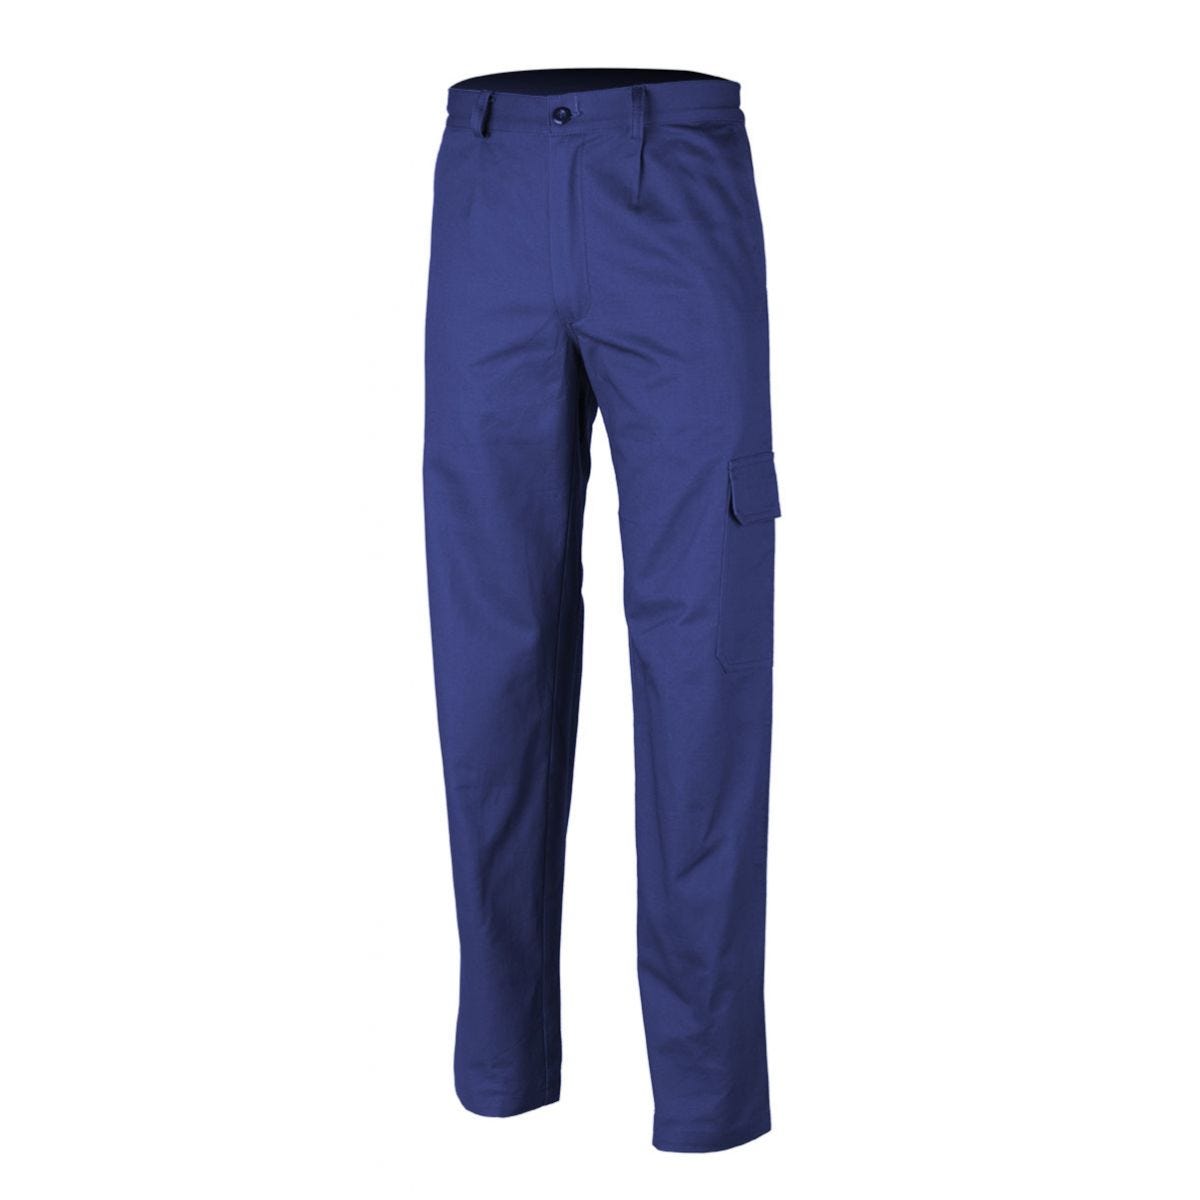 Pantalon PARTNER bleu royal - COVERGUARD - Taille S 0